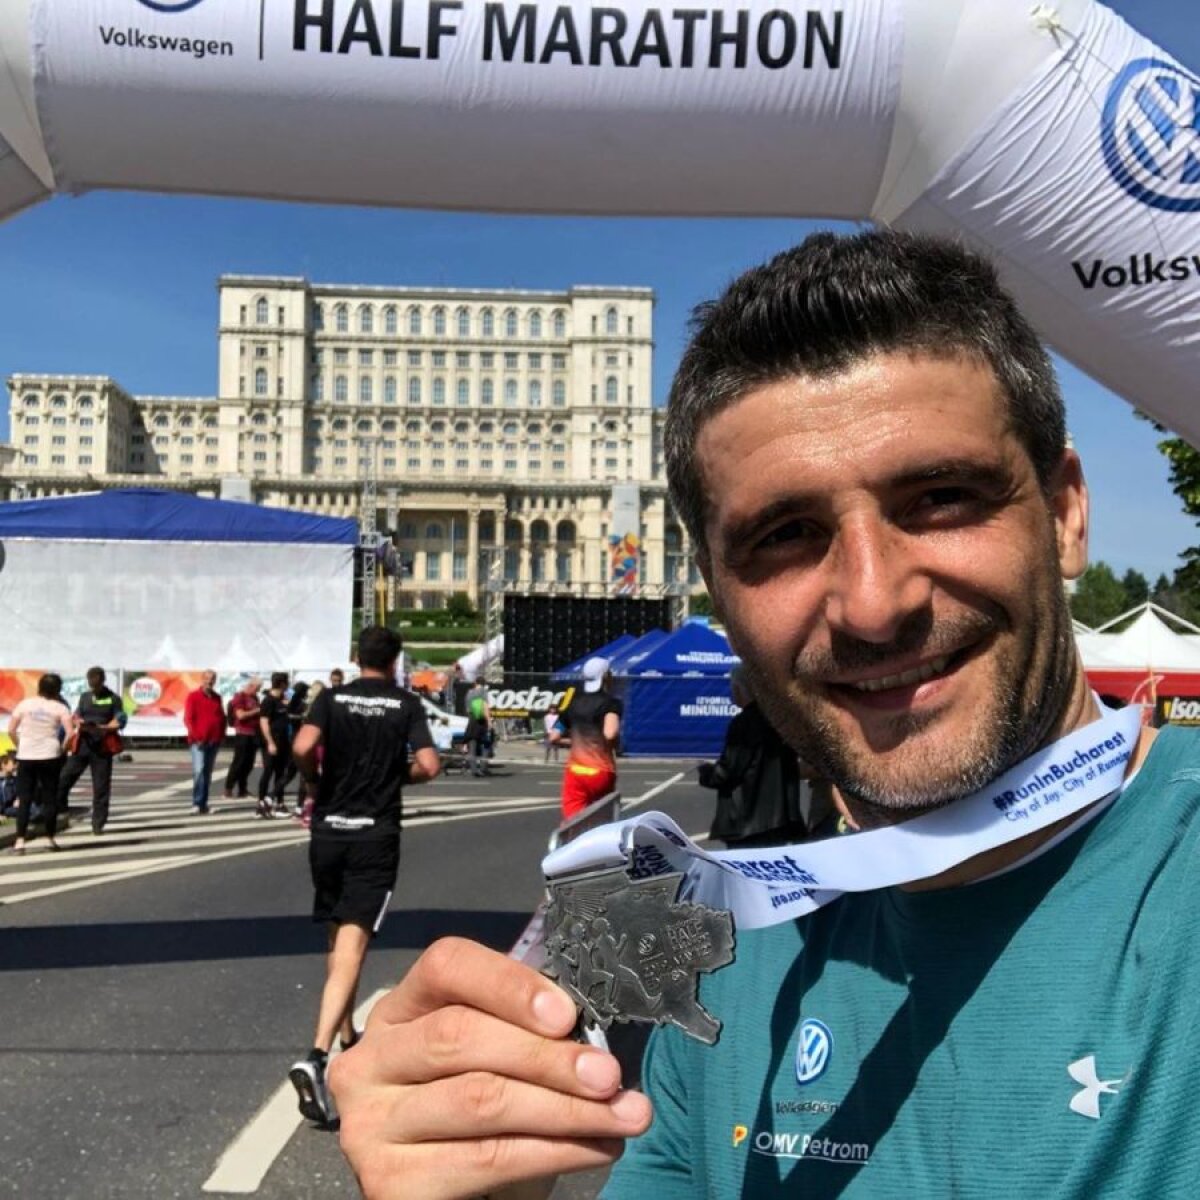 INSTASPORT // Daniel Niculae a rămas sportiv! Participă constant la maratoane și joacă tenis cu prietenii